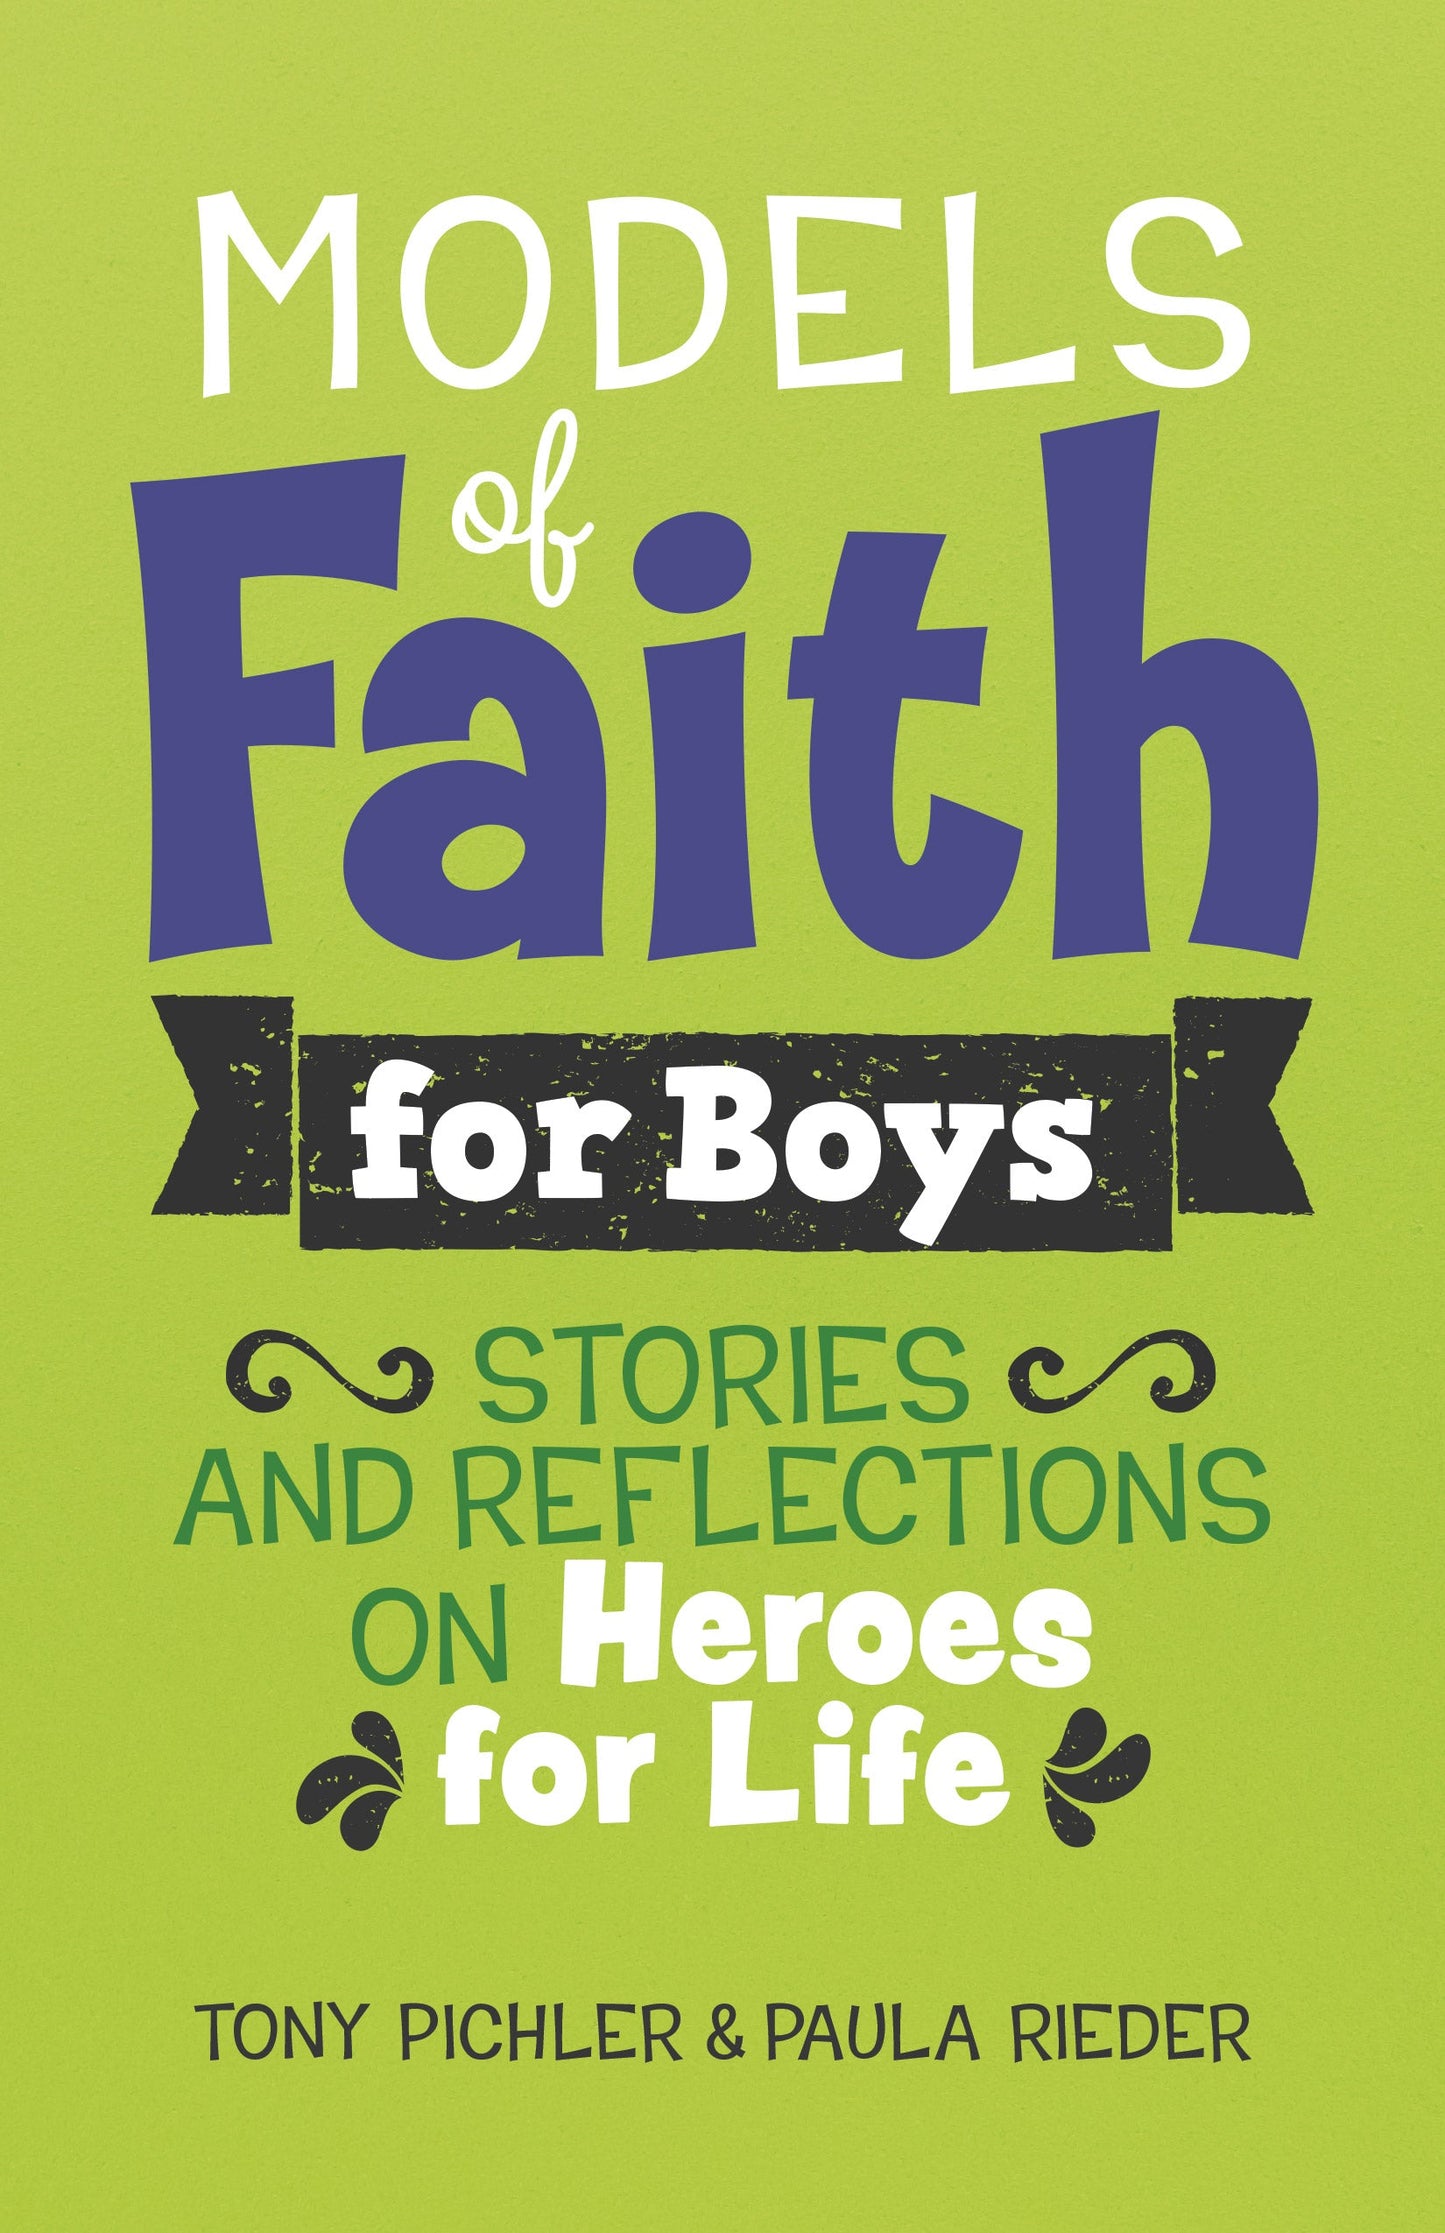 SALE - Models of Faith for Boys